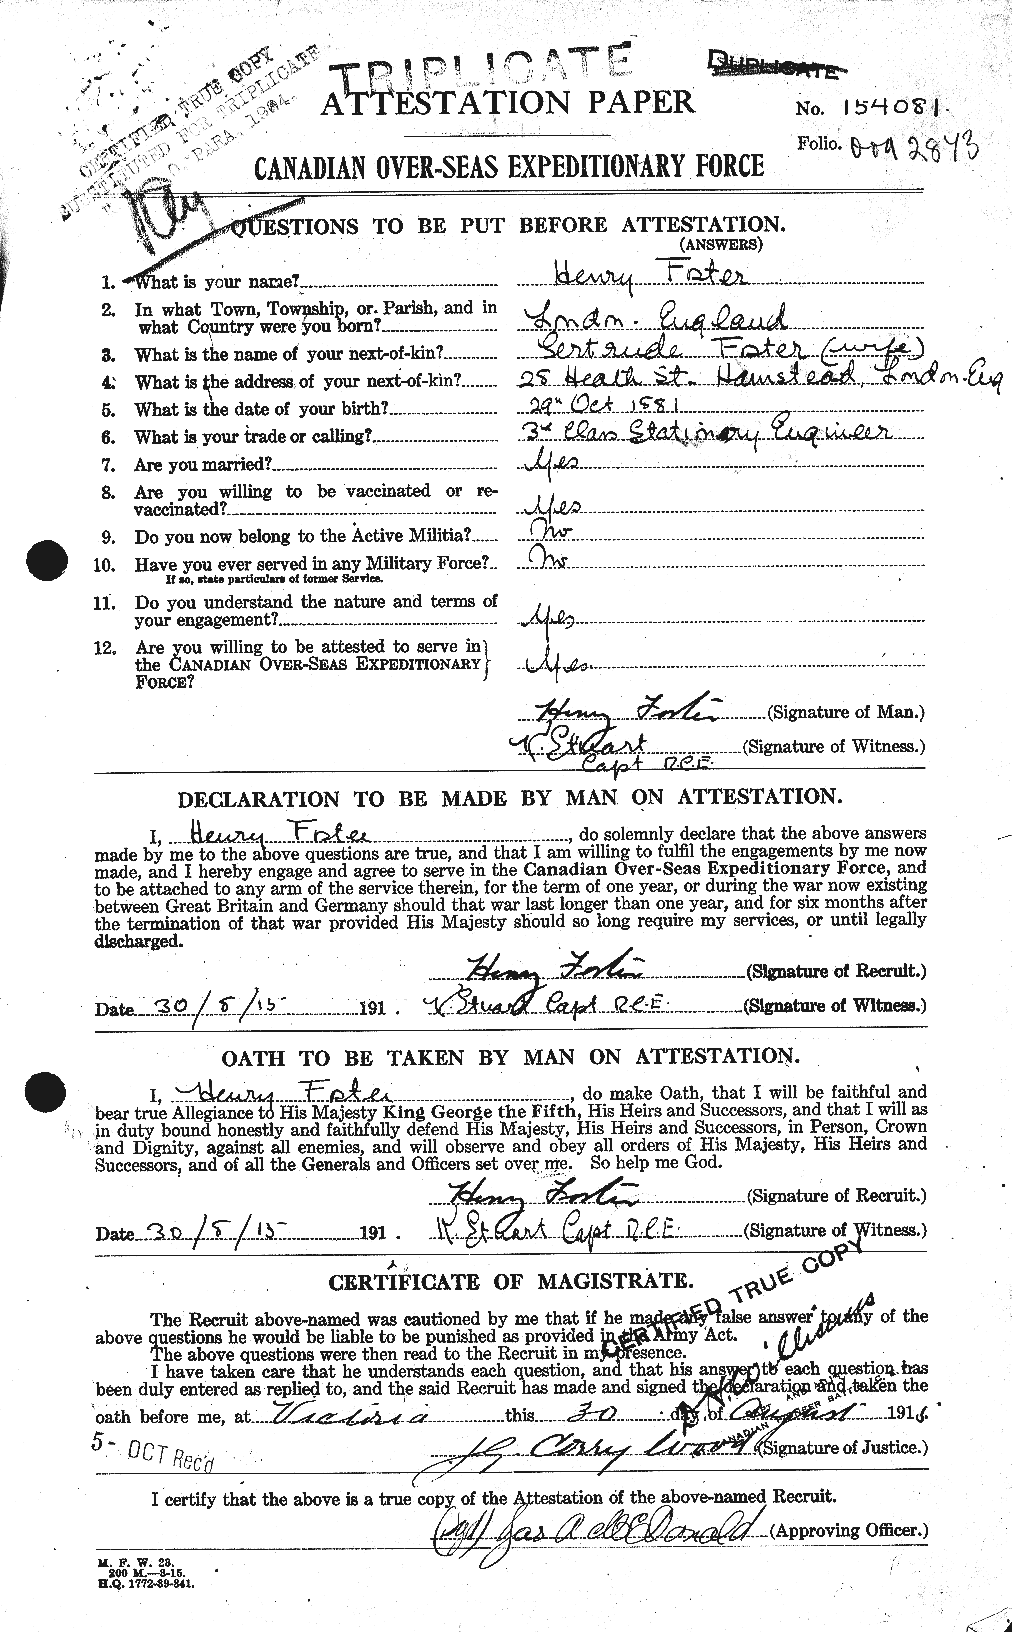 Dossiers du Personnel de la Première Guerre mondiale - CEC 333245a